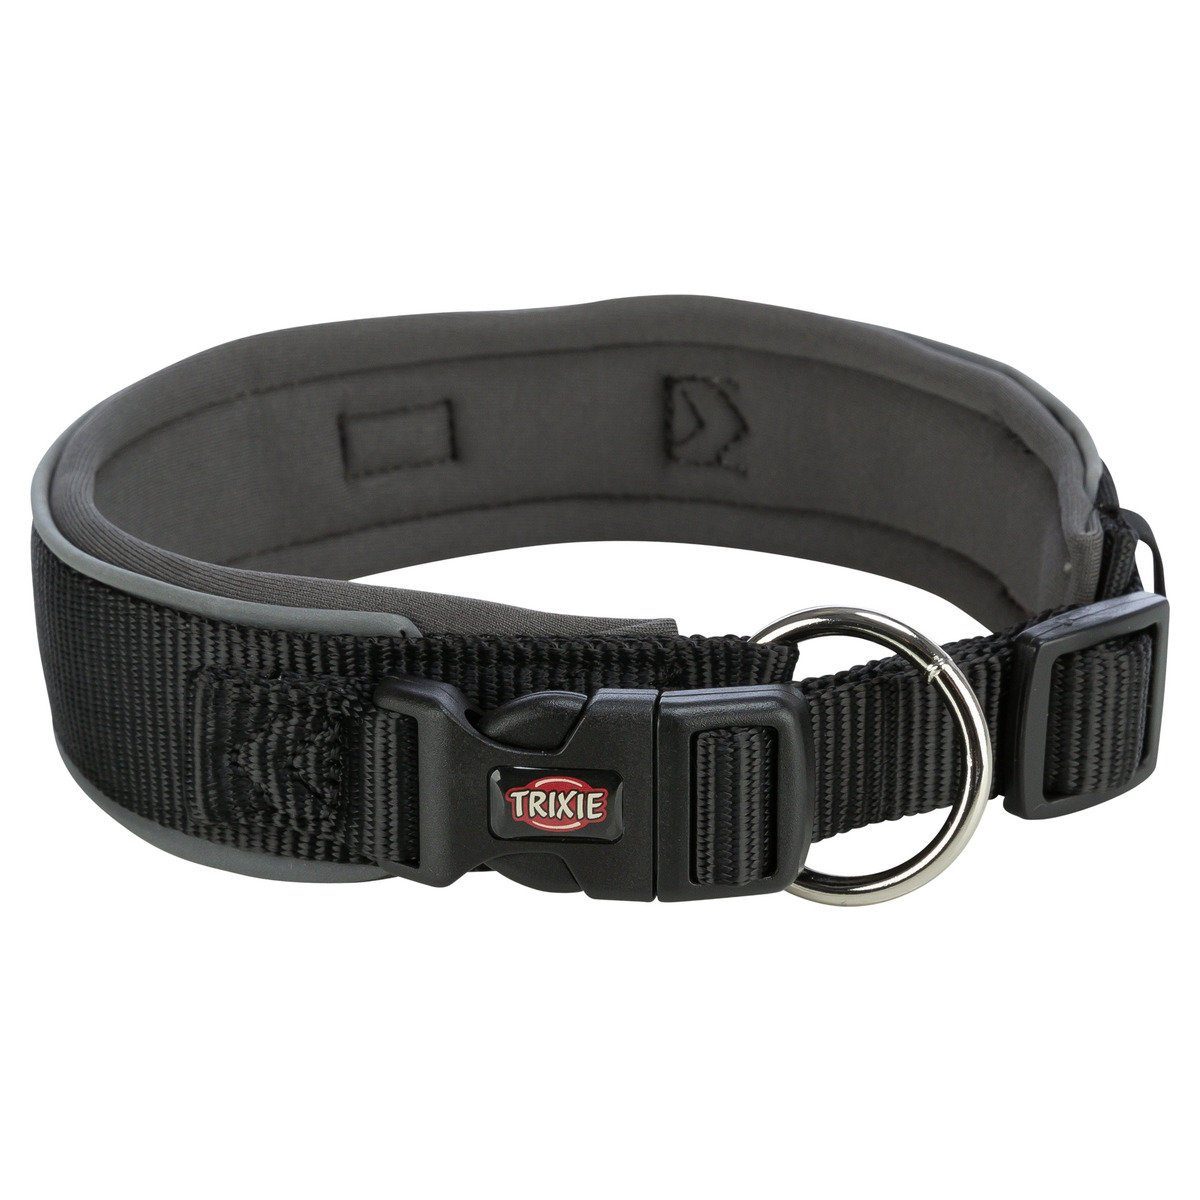 TRIXIE Hunde-Halsband Premium Halsband, extra breit, schwarz/grafit